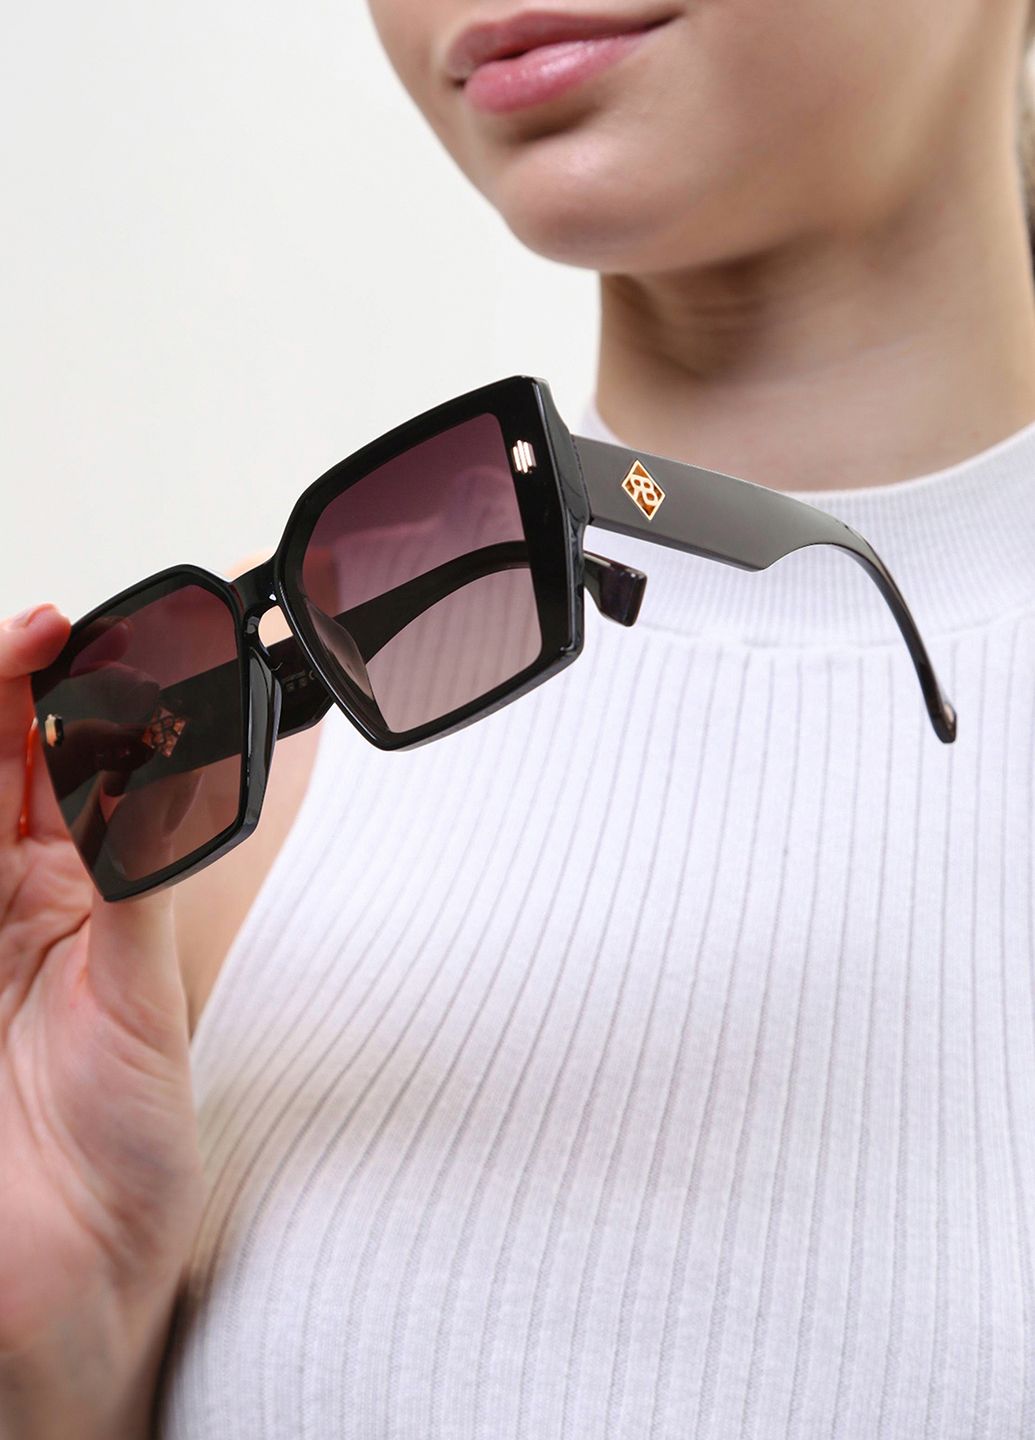 Купить Женские солнцезащитные очки Rita Bradley с поляризацией RB727 112058 в интернет-магазине